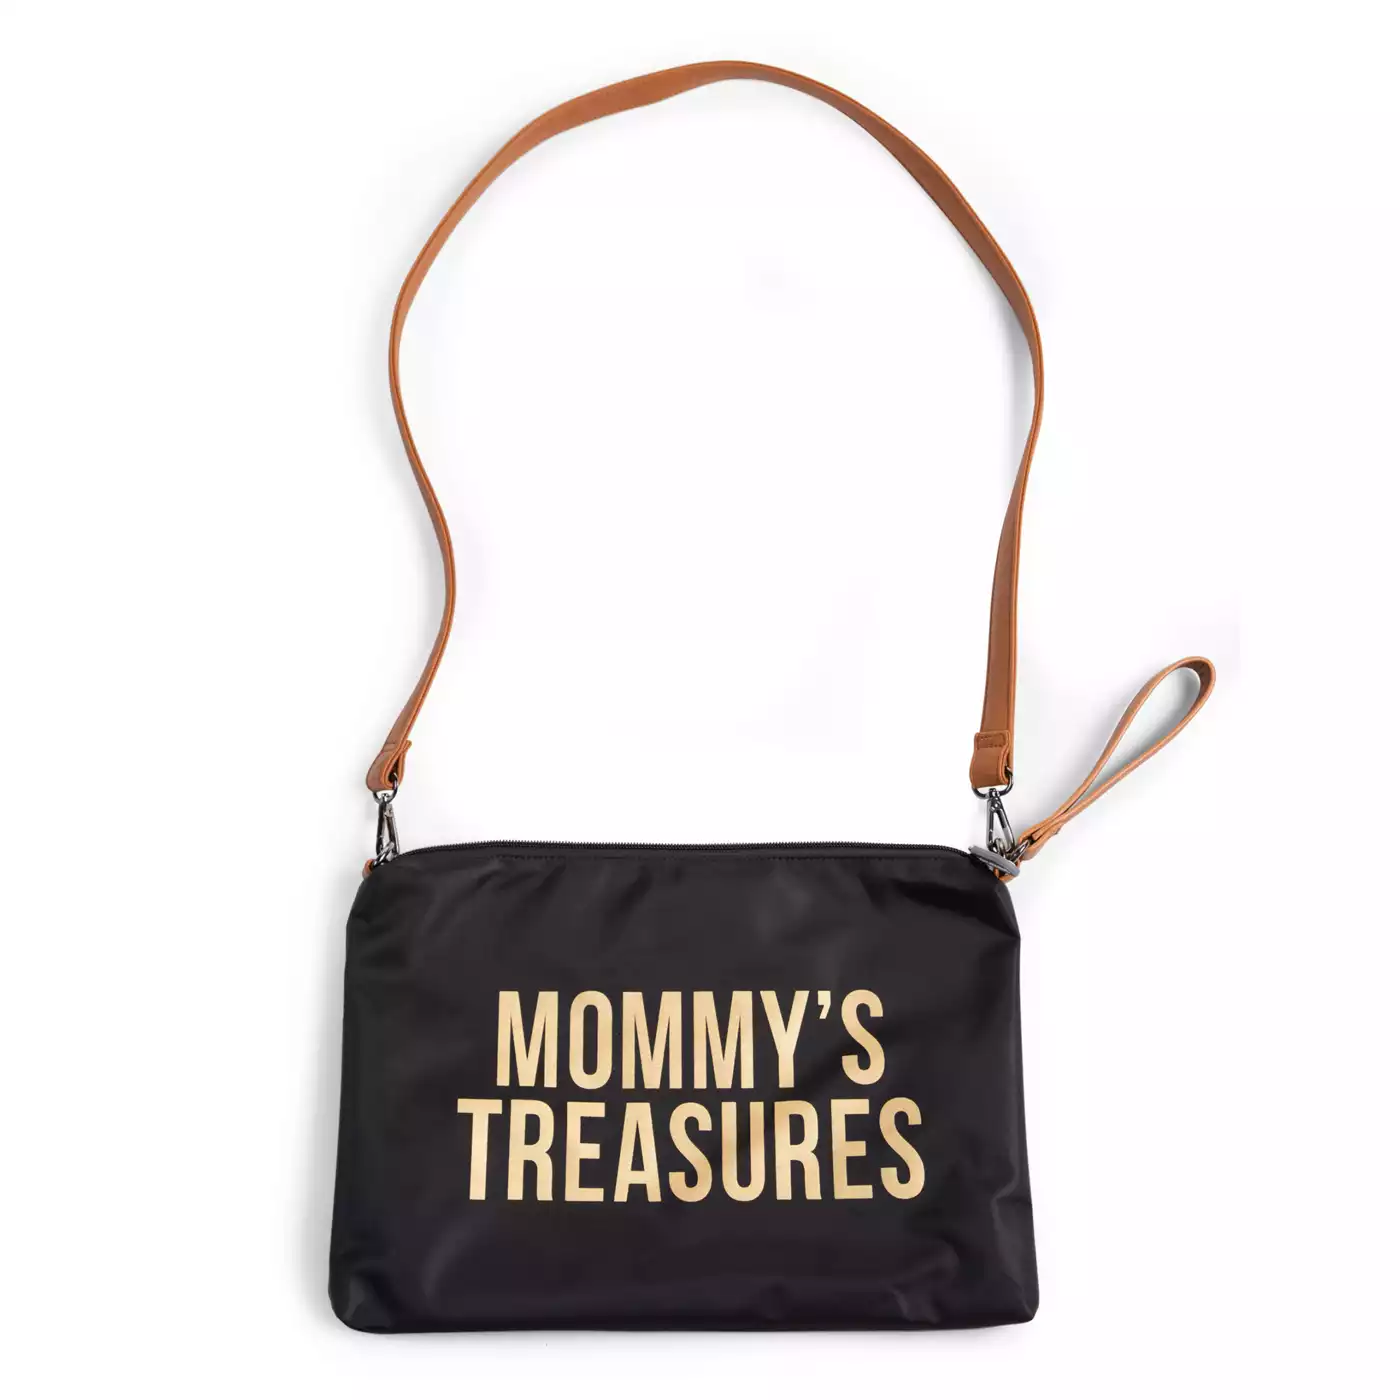 Mommy's Treasures Clutch CHILDHOME Gold Schwarz Gelb 2000580656169 5